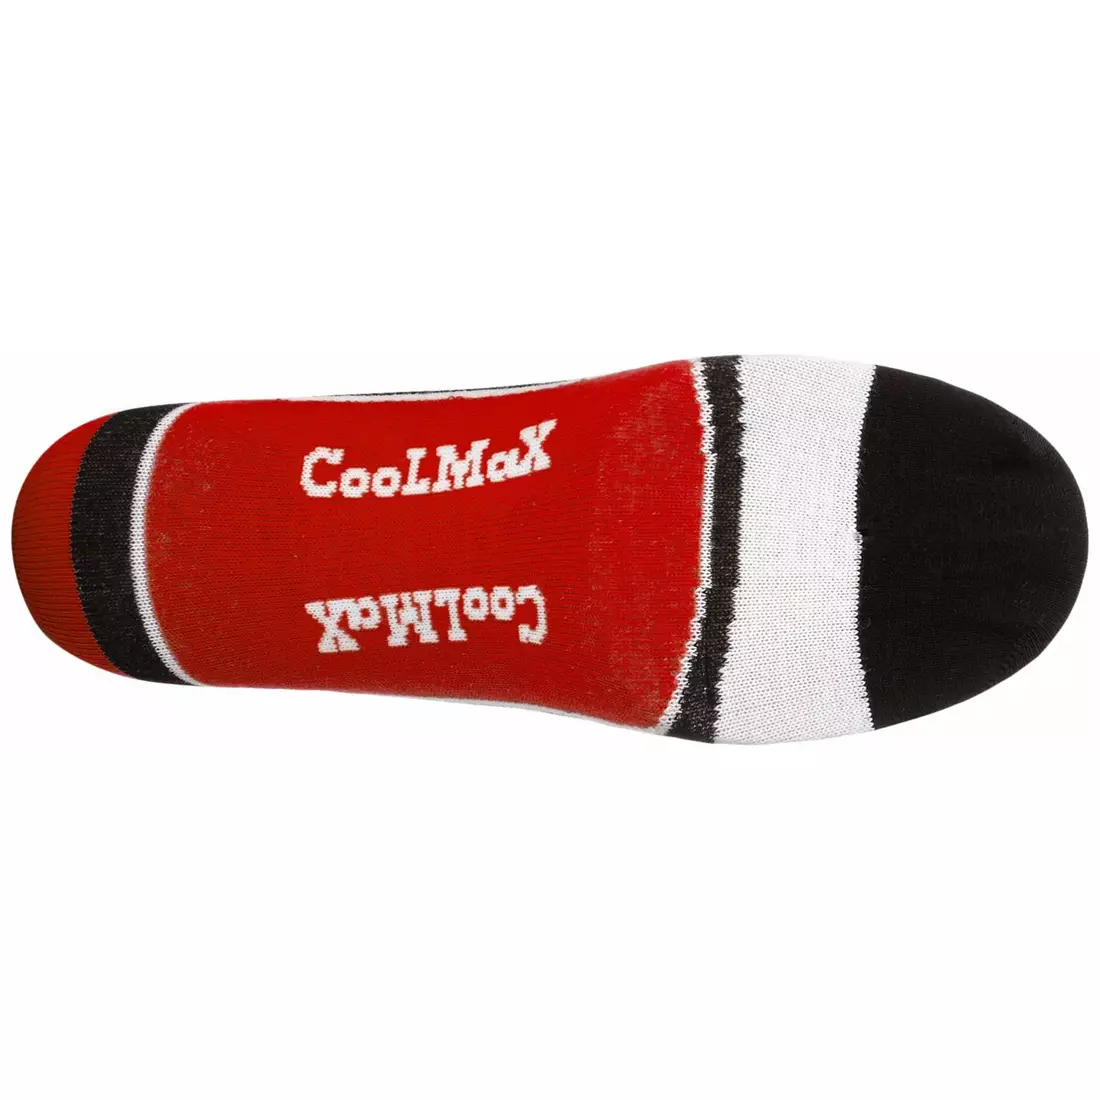 ROGELLI RCS-03 - COOLMAX - cyklistické ponožky, červené